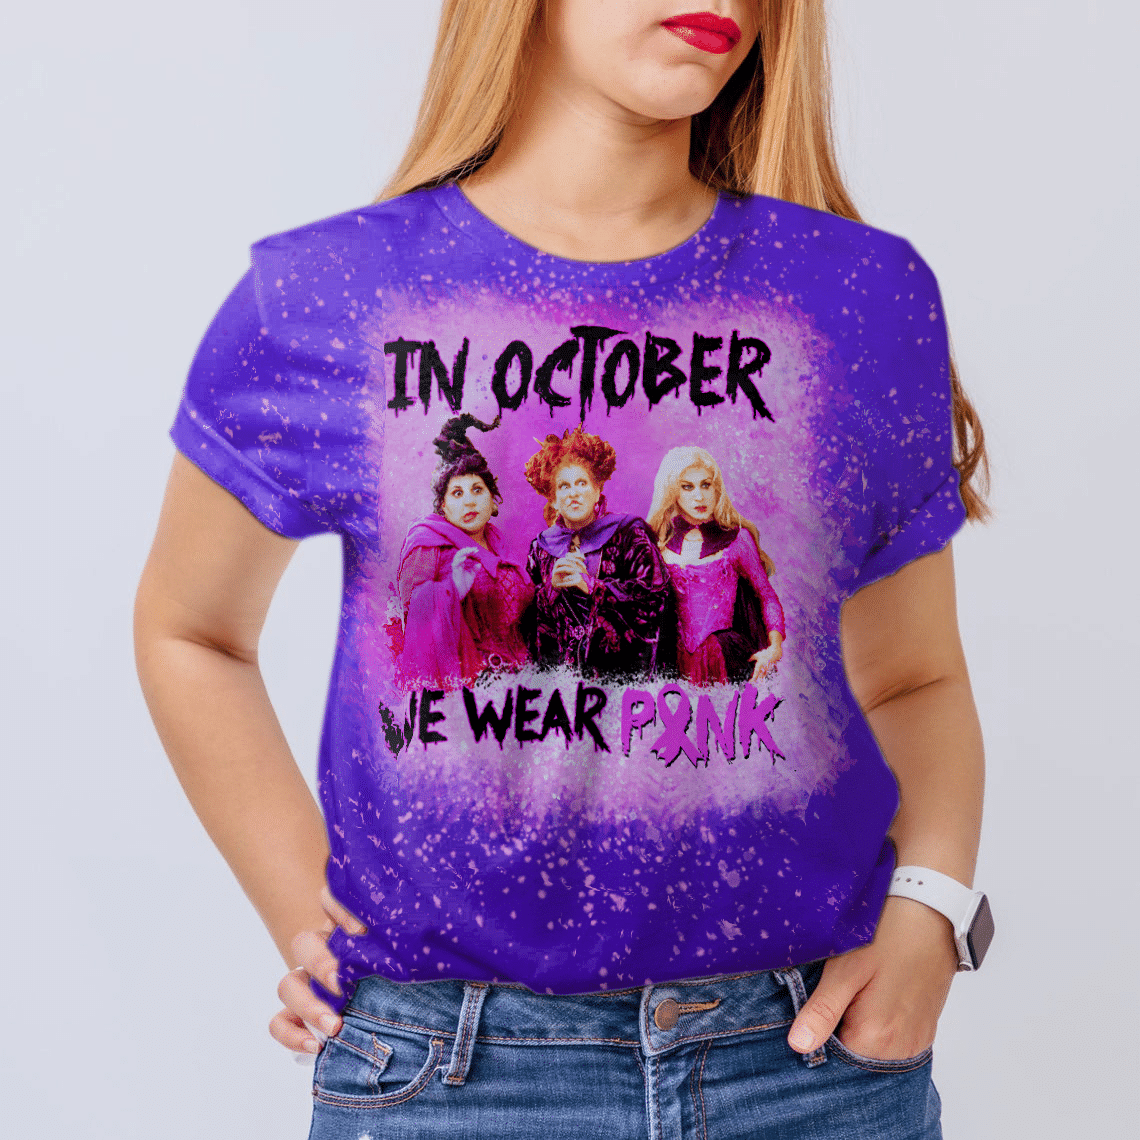 In October We Wear Pink - Hocus Pocus